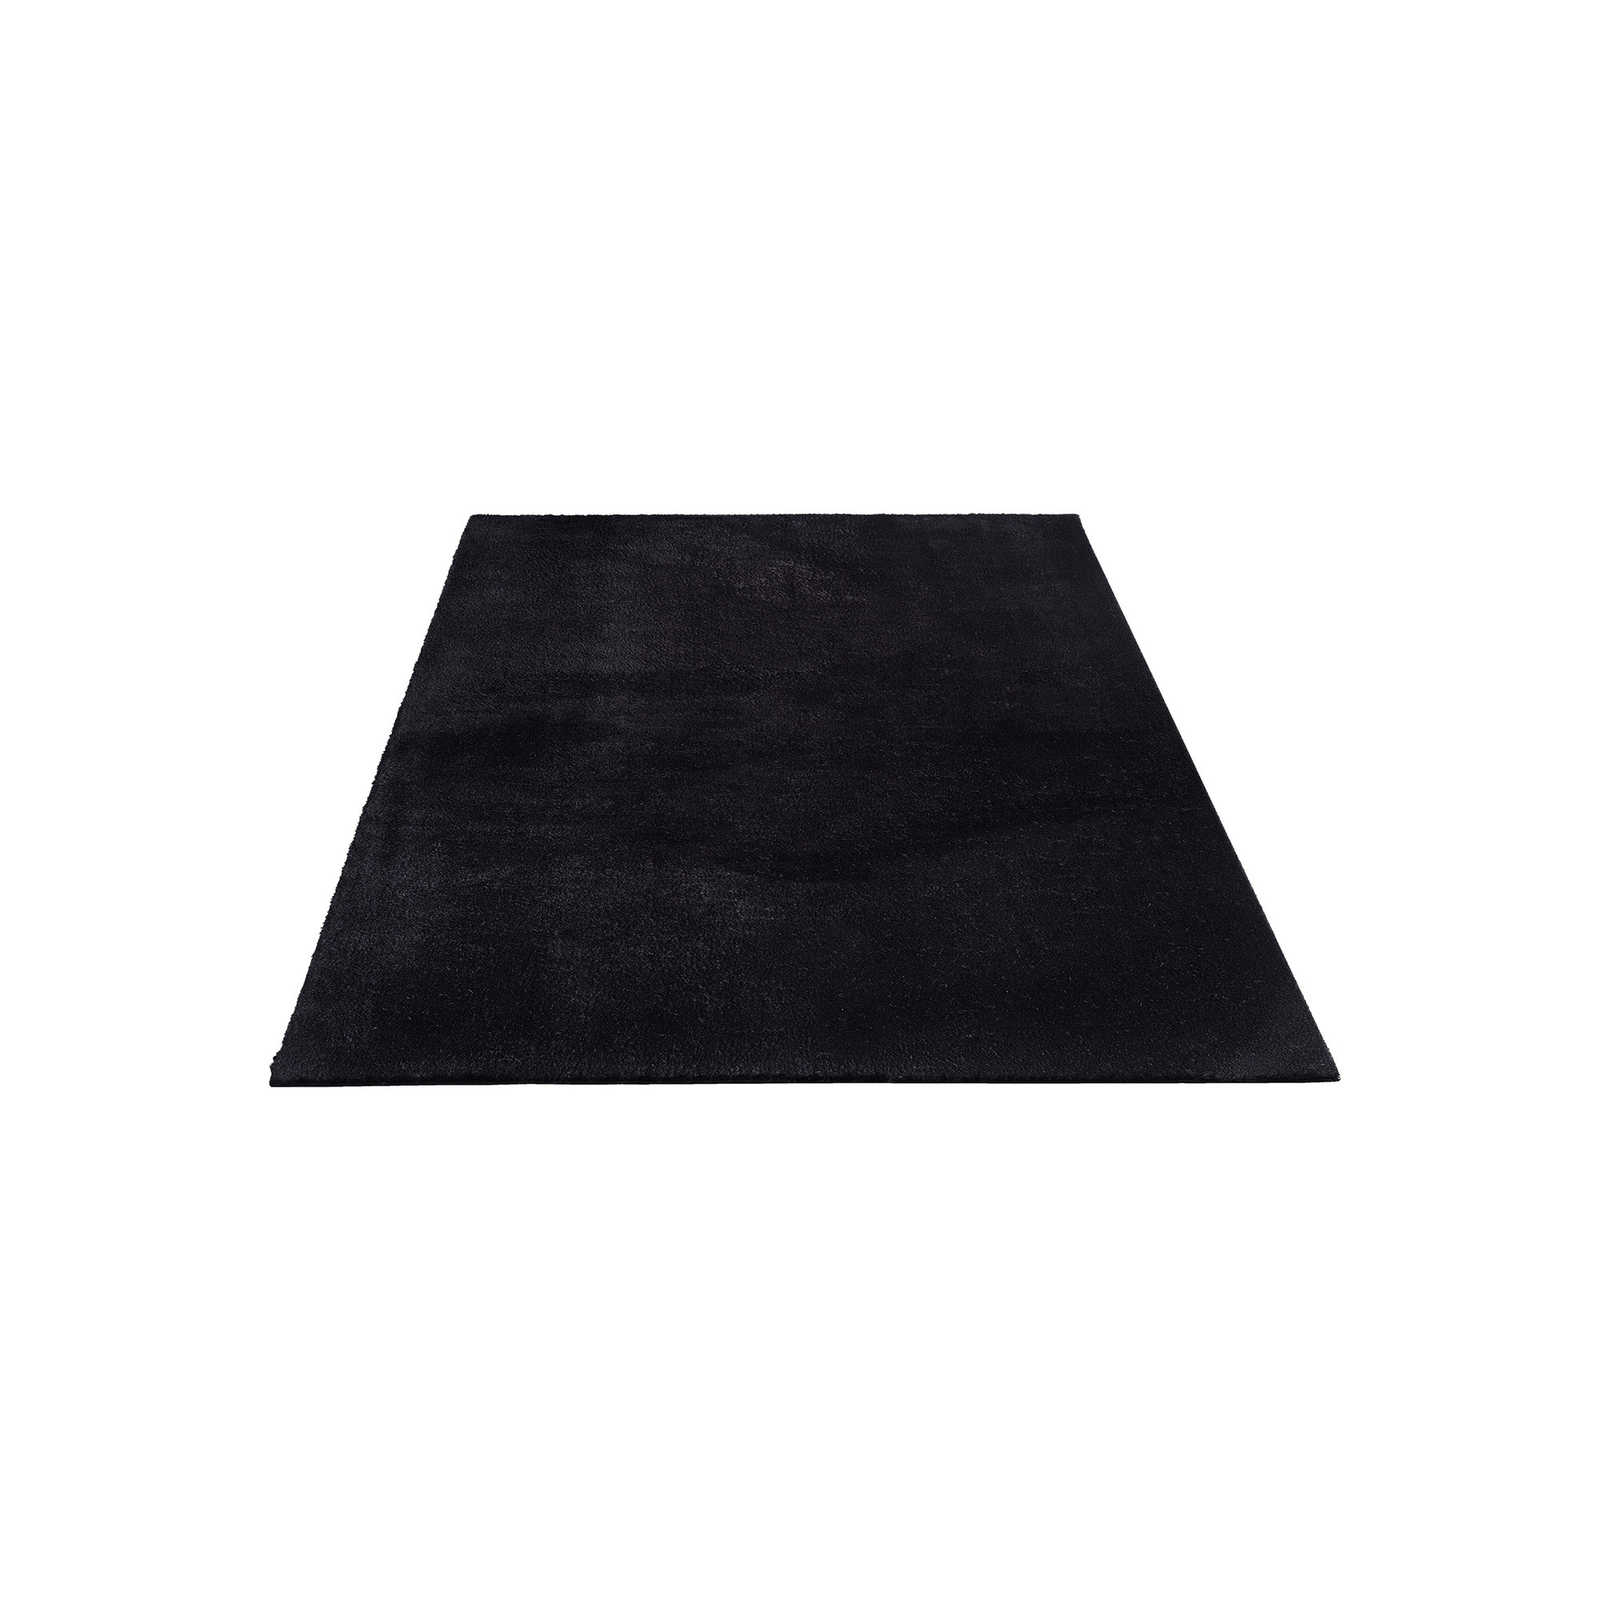 Velvety high pile carpet in black - 230 x 160 cm
